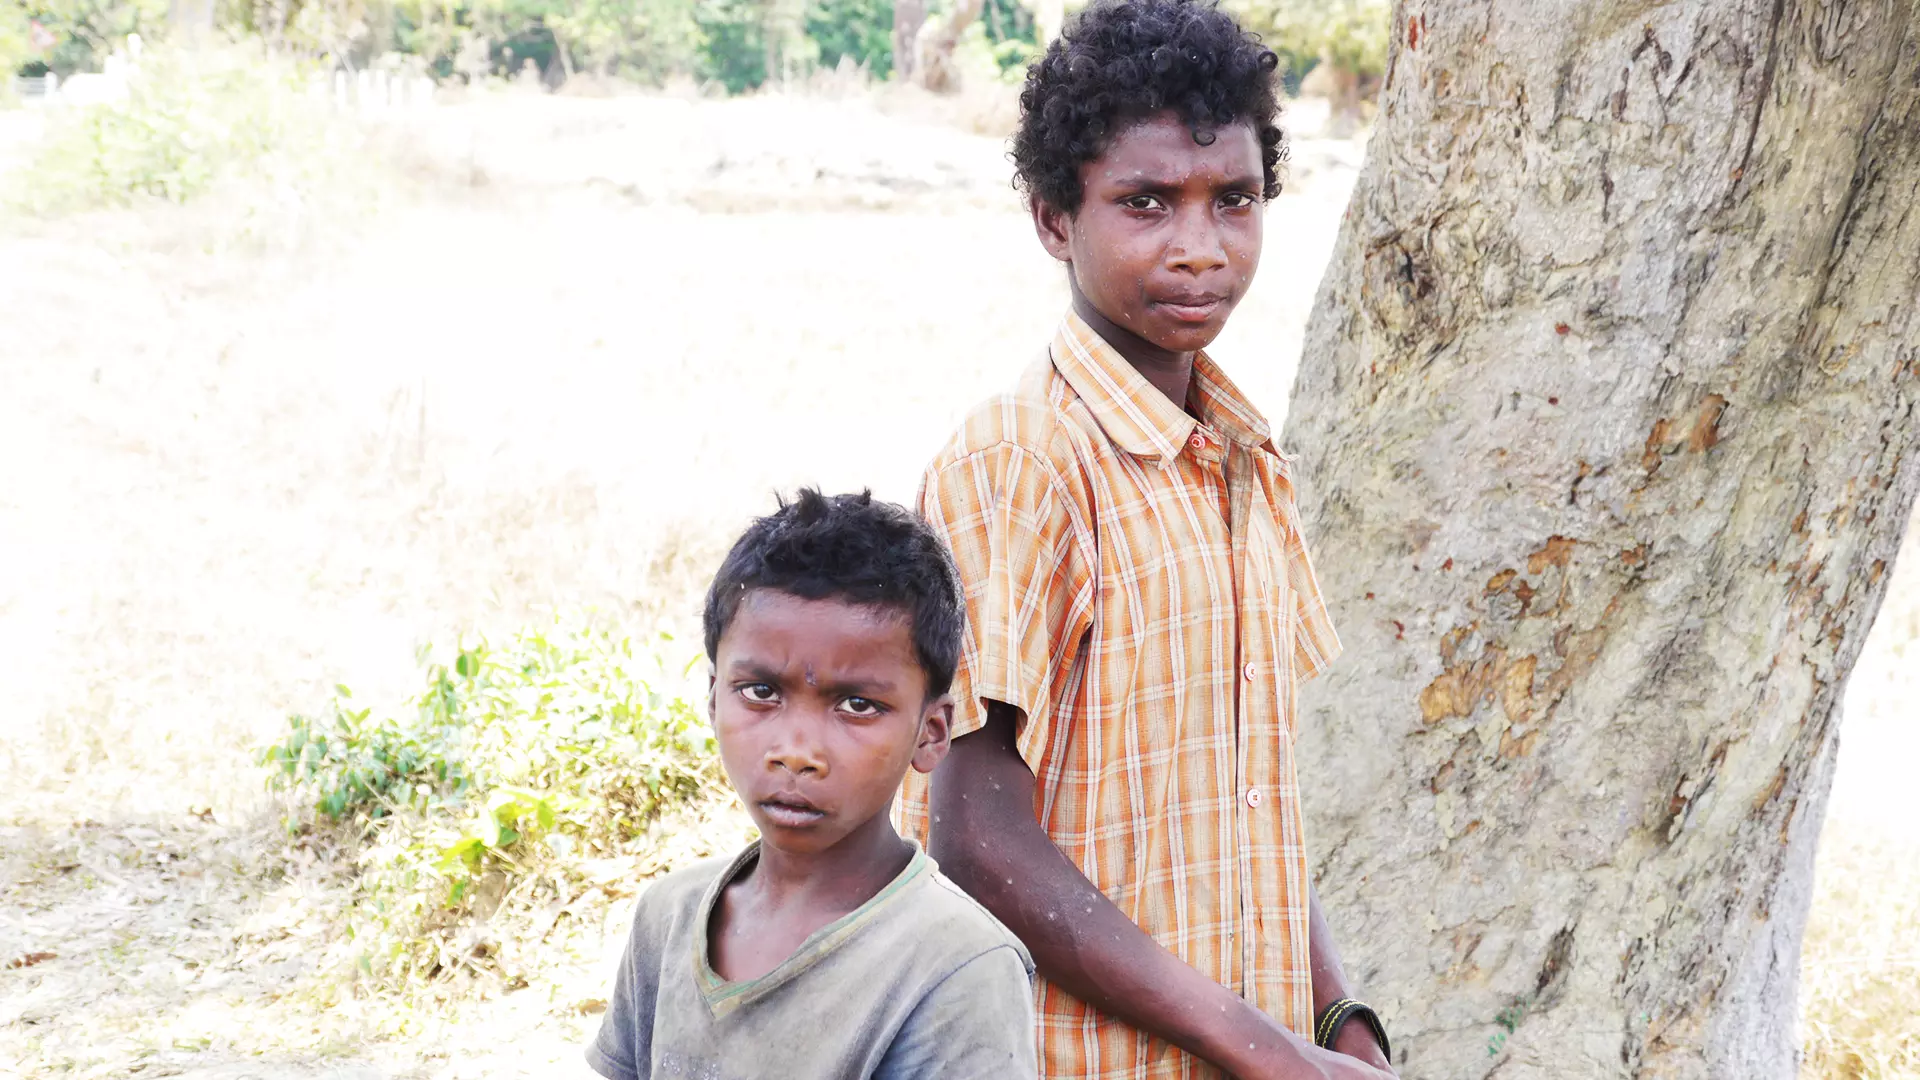 Children of the Iruliga Scheduled Tribe in Ramadevara Betta on Bengaluru-Mysuru road. Iruliga are among the endangered castes in Karnataka.